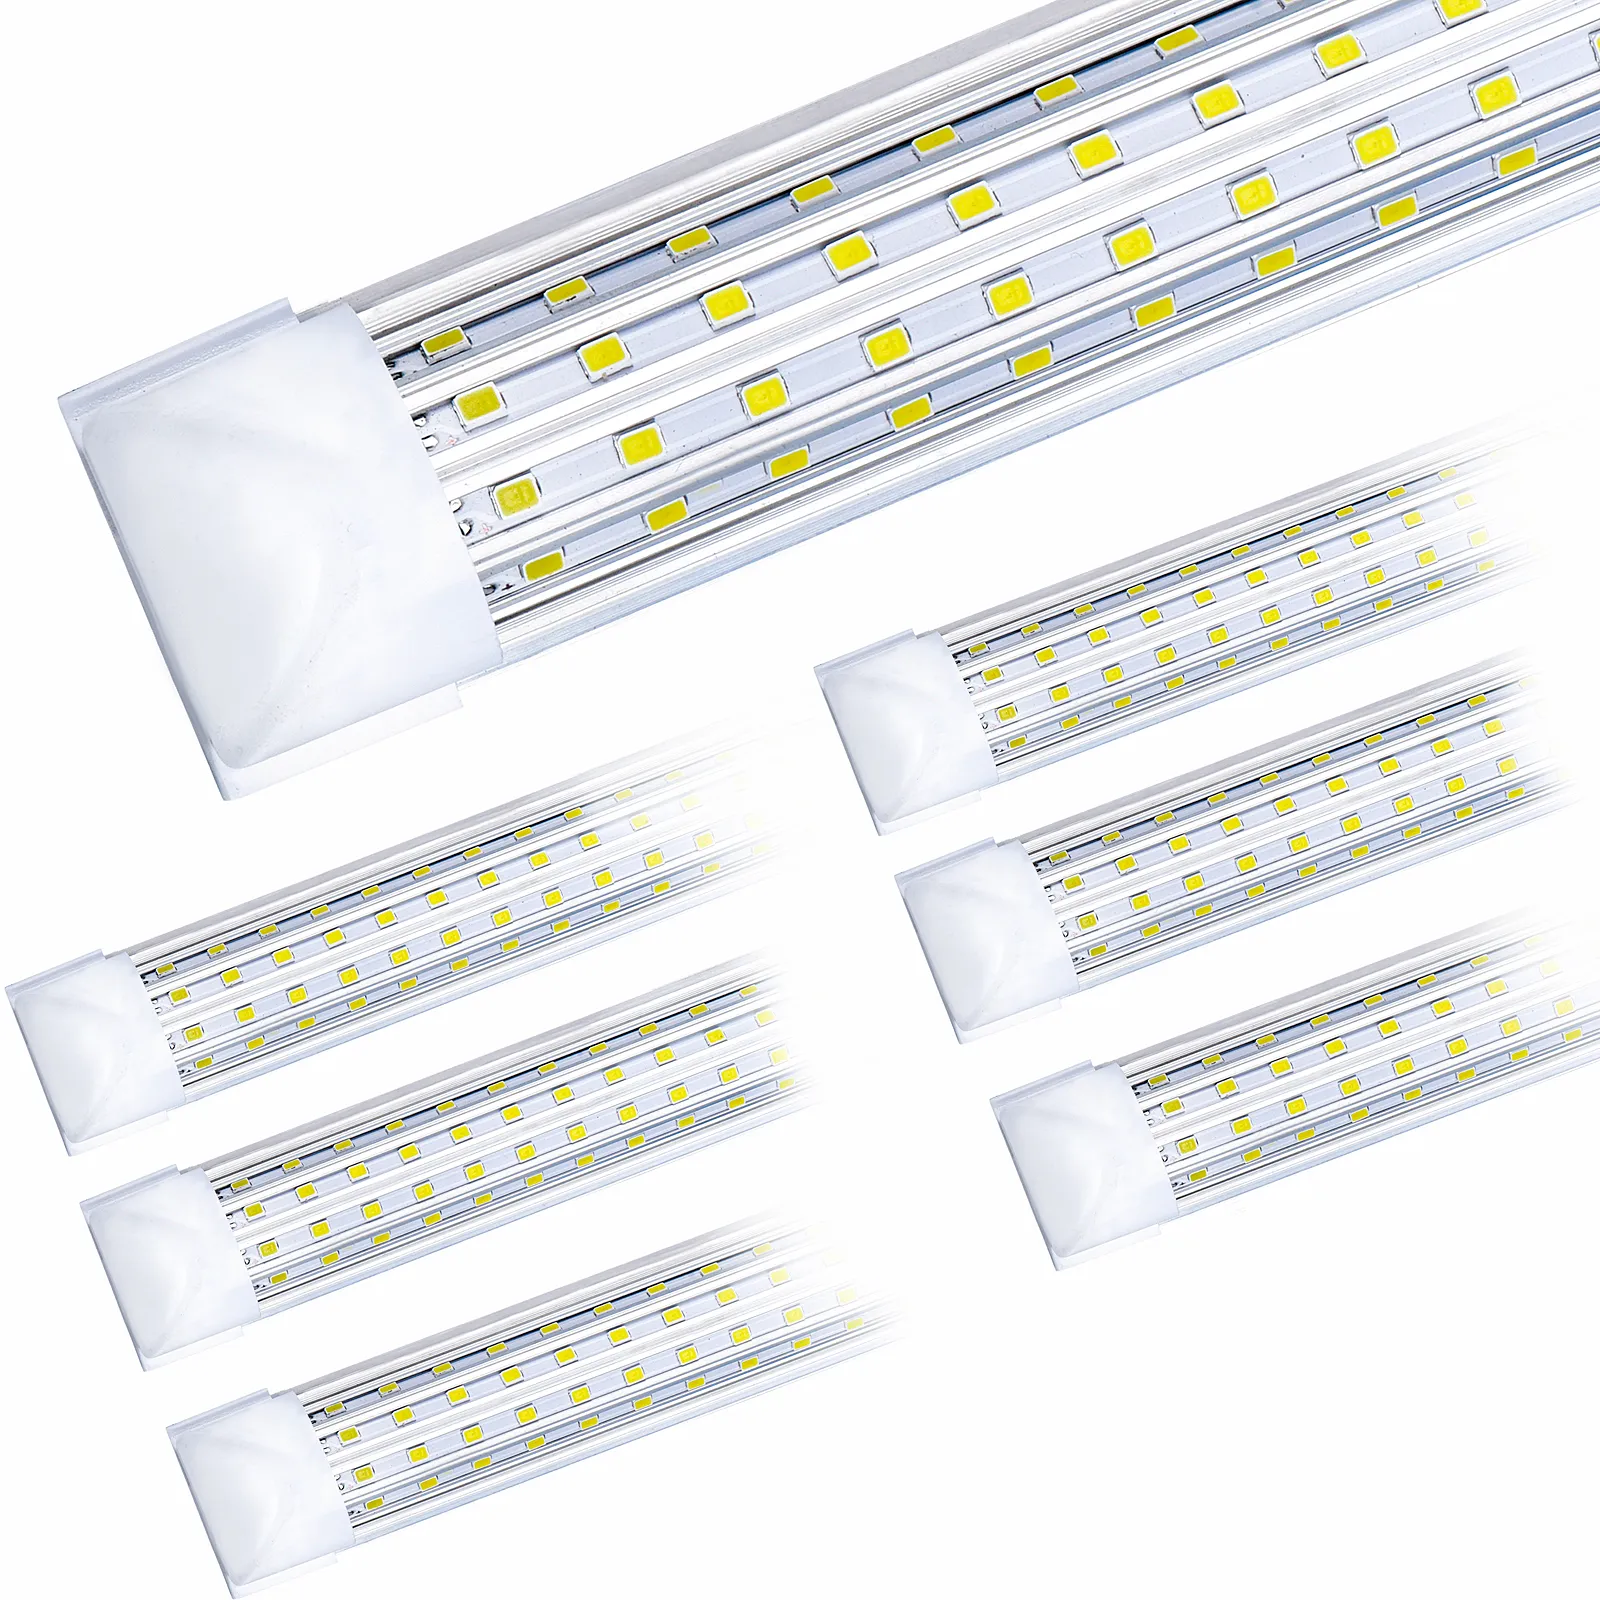 20 stücke, 4ft 5ft 6ft 8ft LED-Röhrchen Licht u Form integrierte LED-Röhrchen 4 5 6 8 Ft-Kühler-Türkühler LED-Leuchten